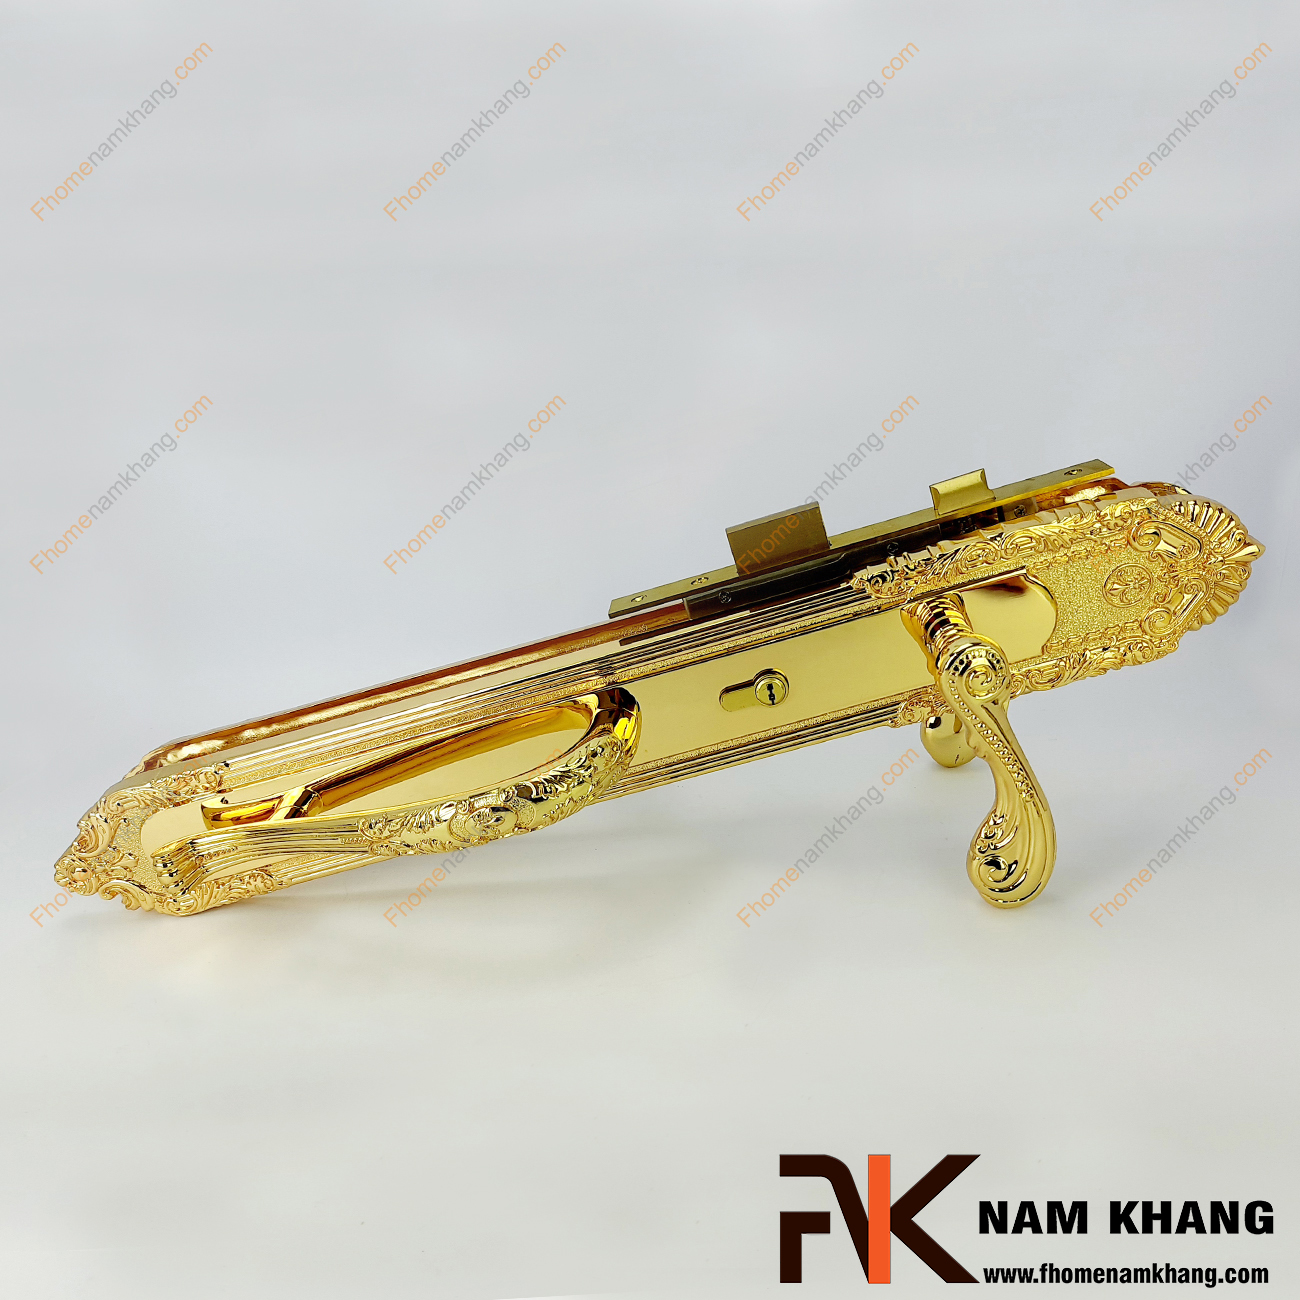 Khóa cửa sảnh cổ điển màu đồng vàng NK185XL-24K có thiết kế đặc biệt hơn các dạng khóa cửa thông thường bởi được thiết kế thêm tay kéo thay vì chỉ có tay gạt như bình thường.